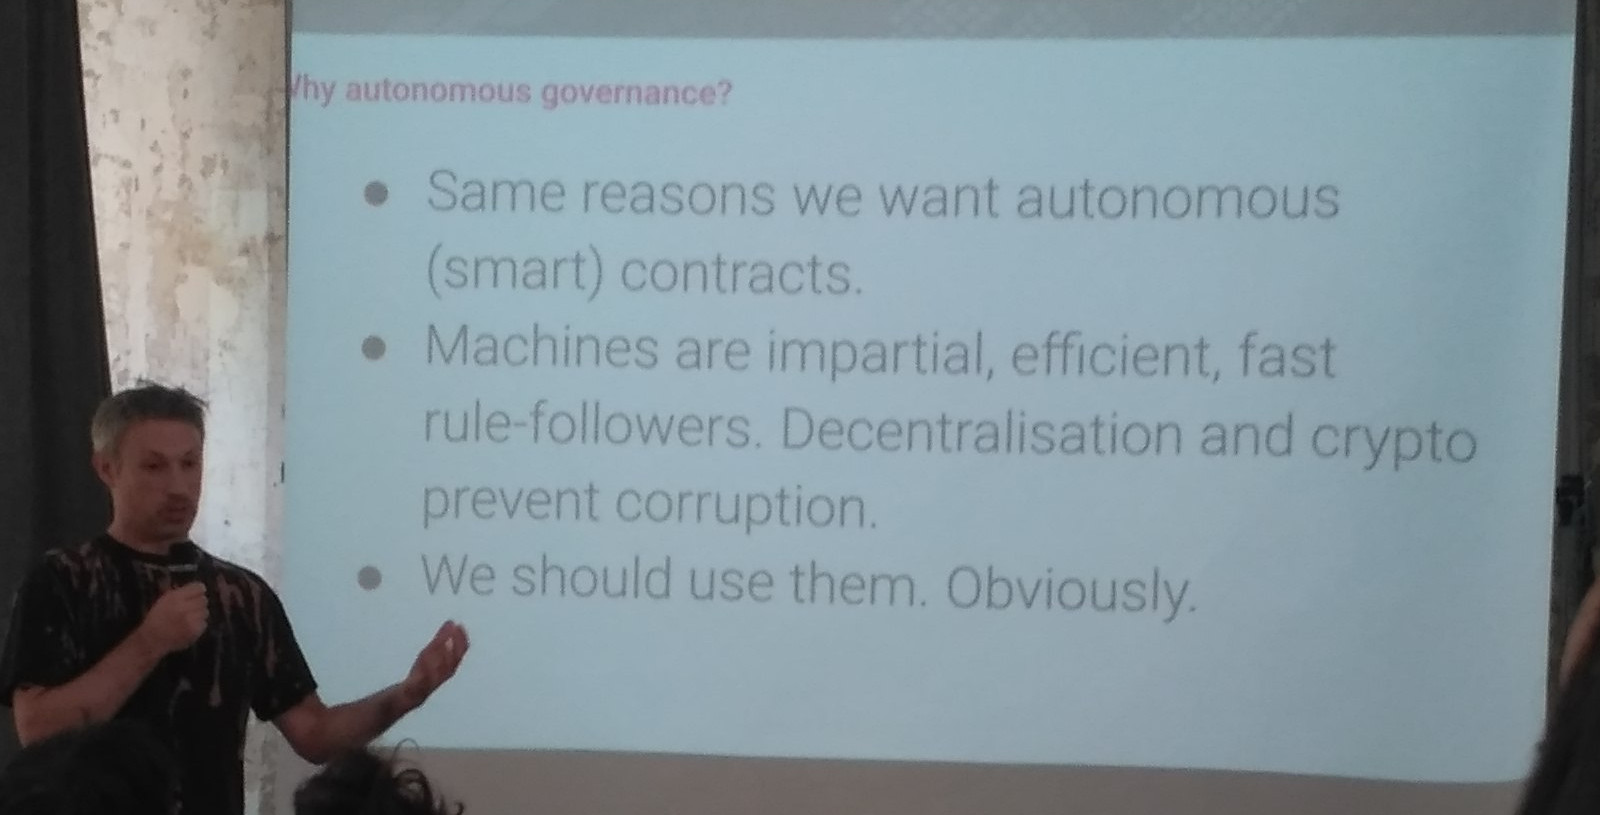 Governance slide